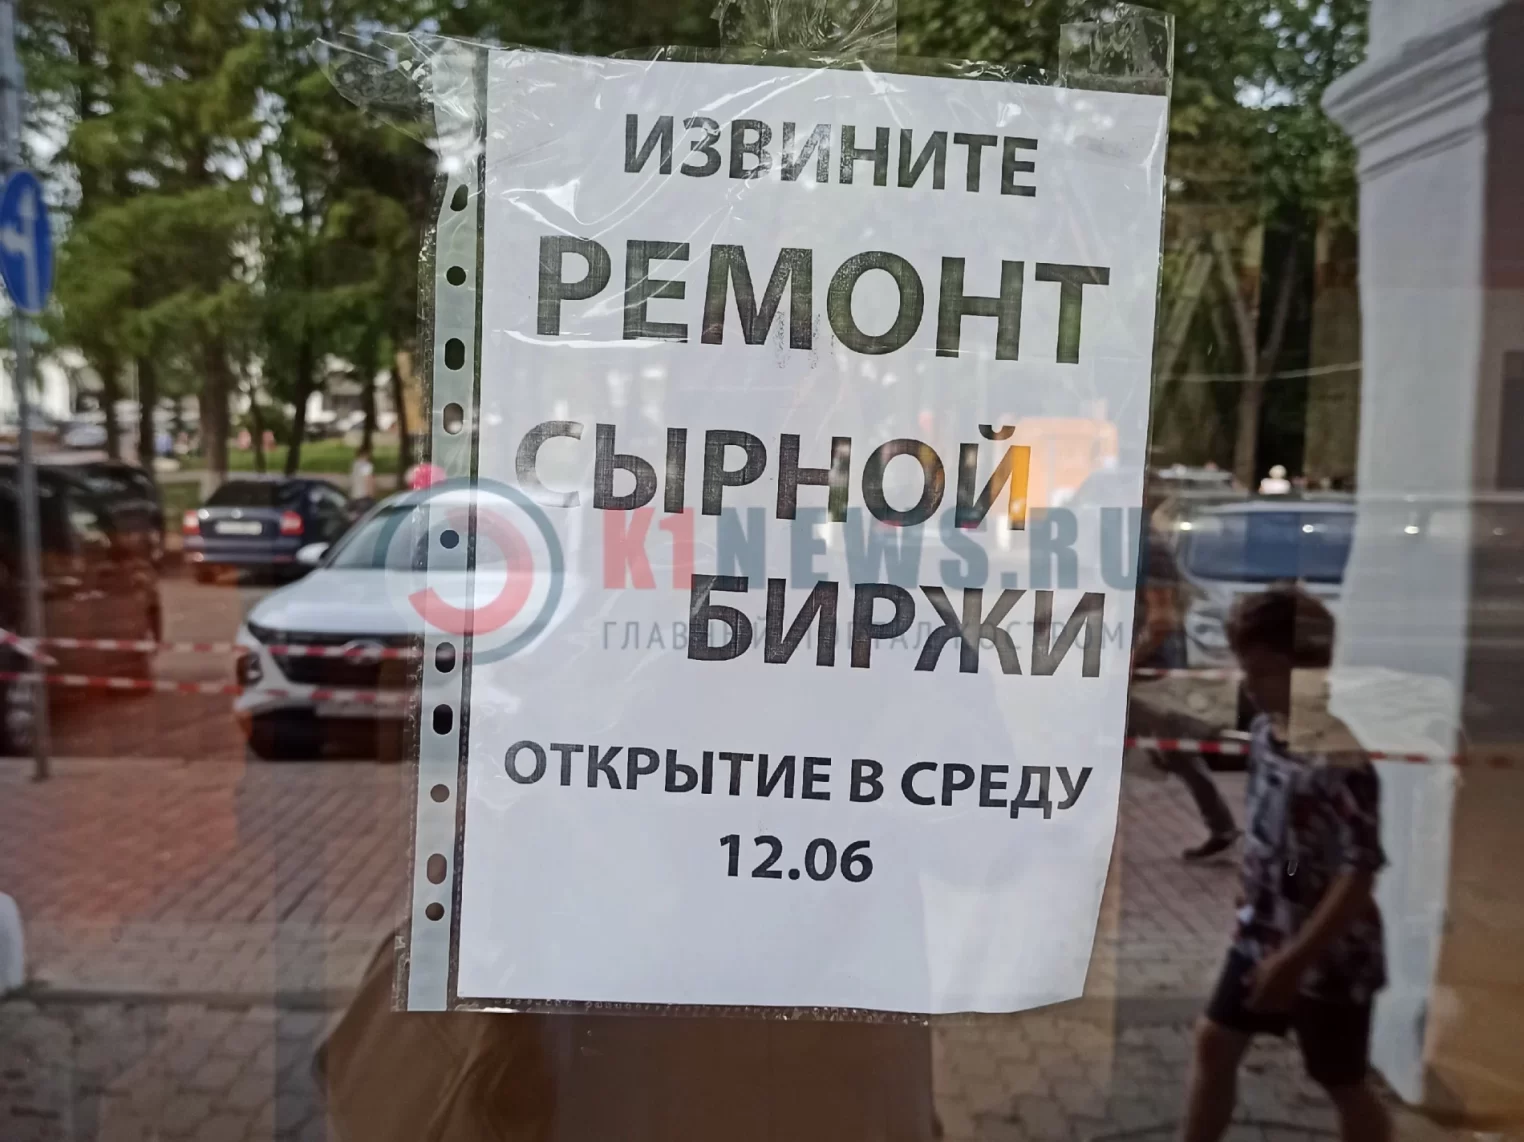 Сырная биржа в Костроме возвращается на старое место